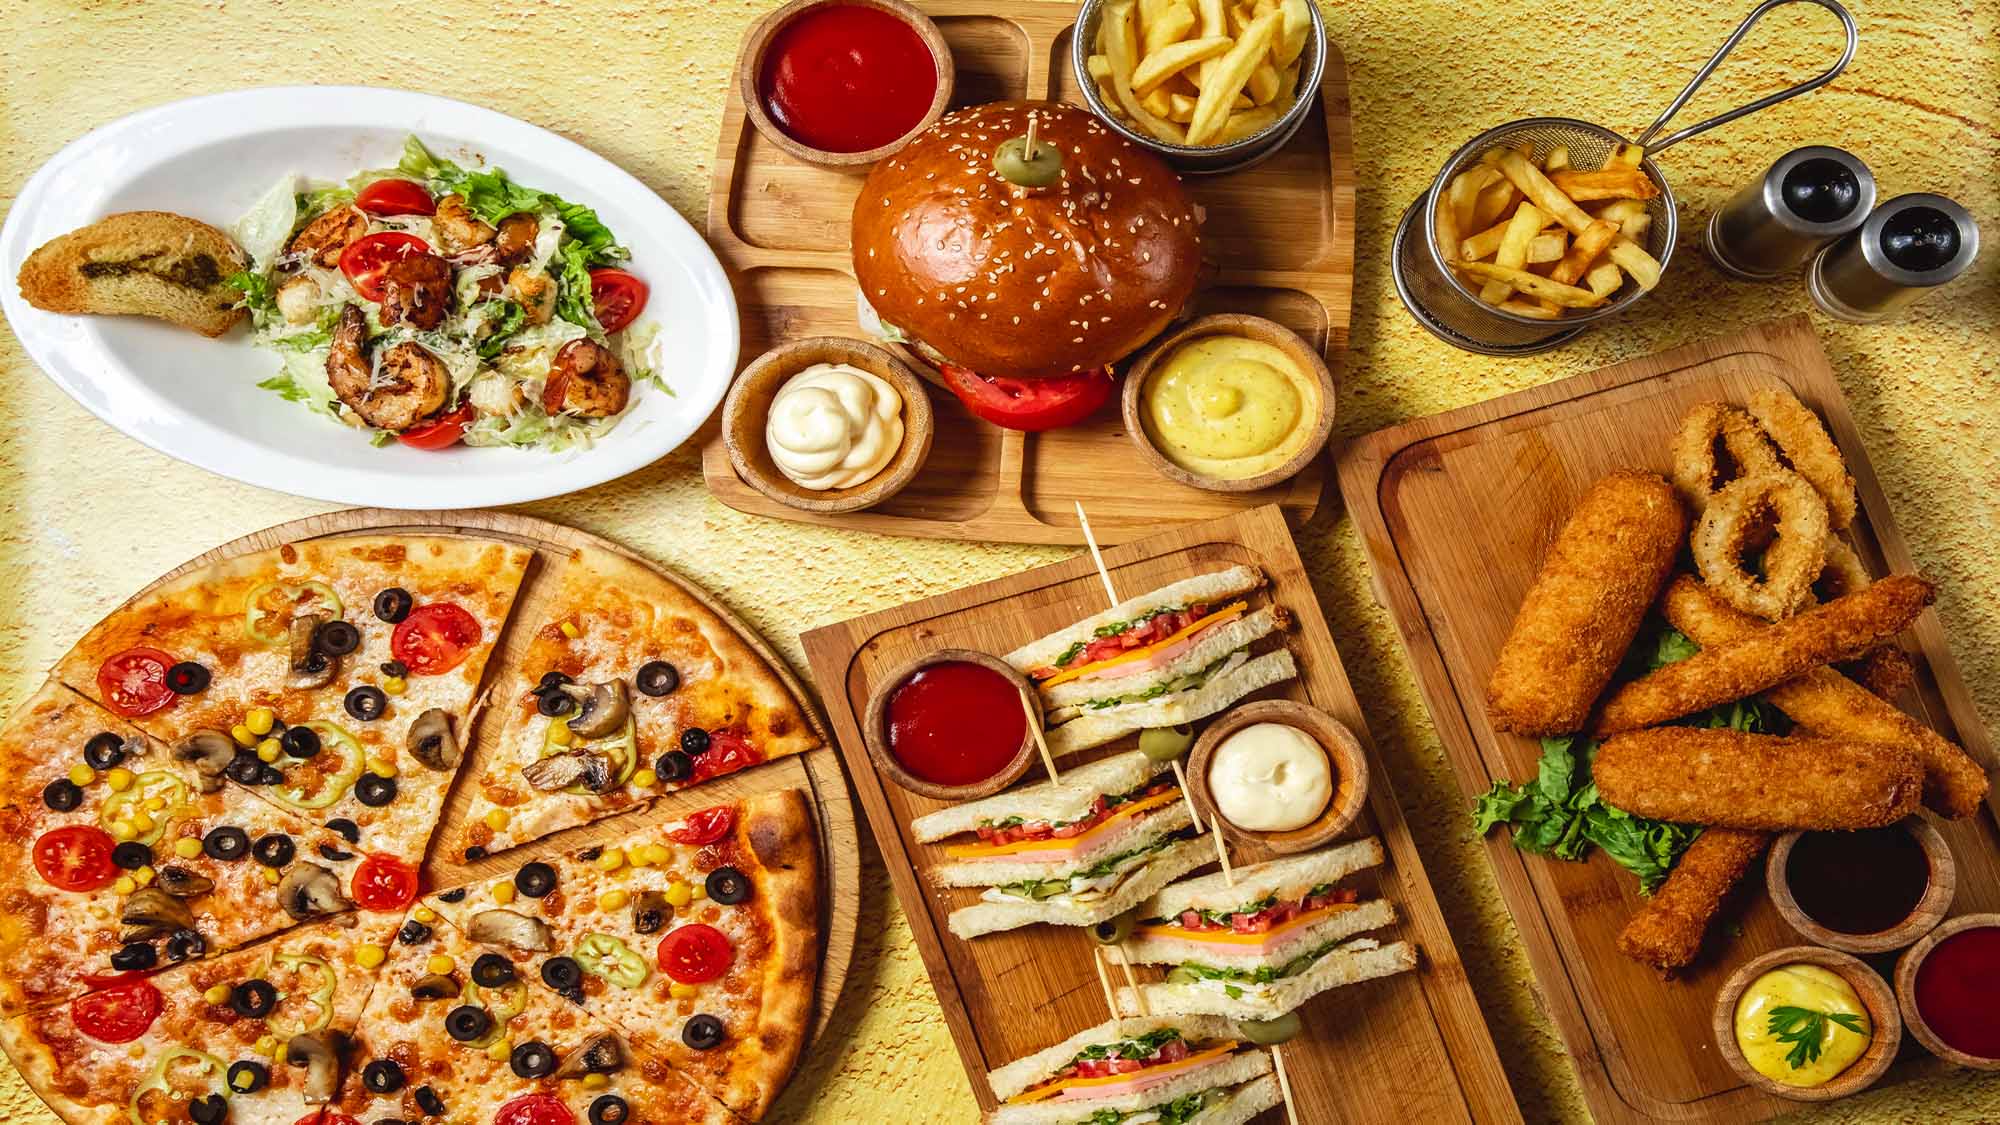 fast-food-mix-french-fries-pizza-mozzarella-sticks-club-sandwich-hamburger-mushroom